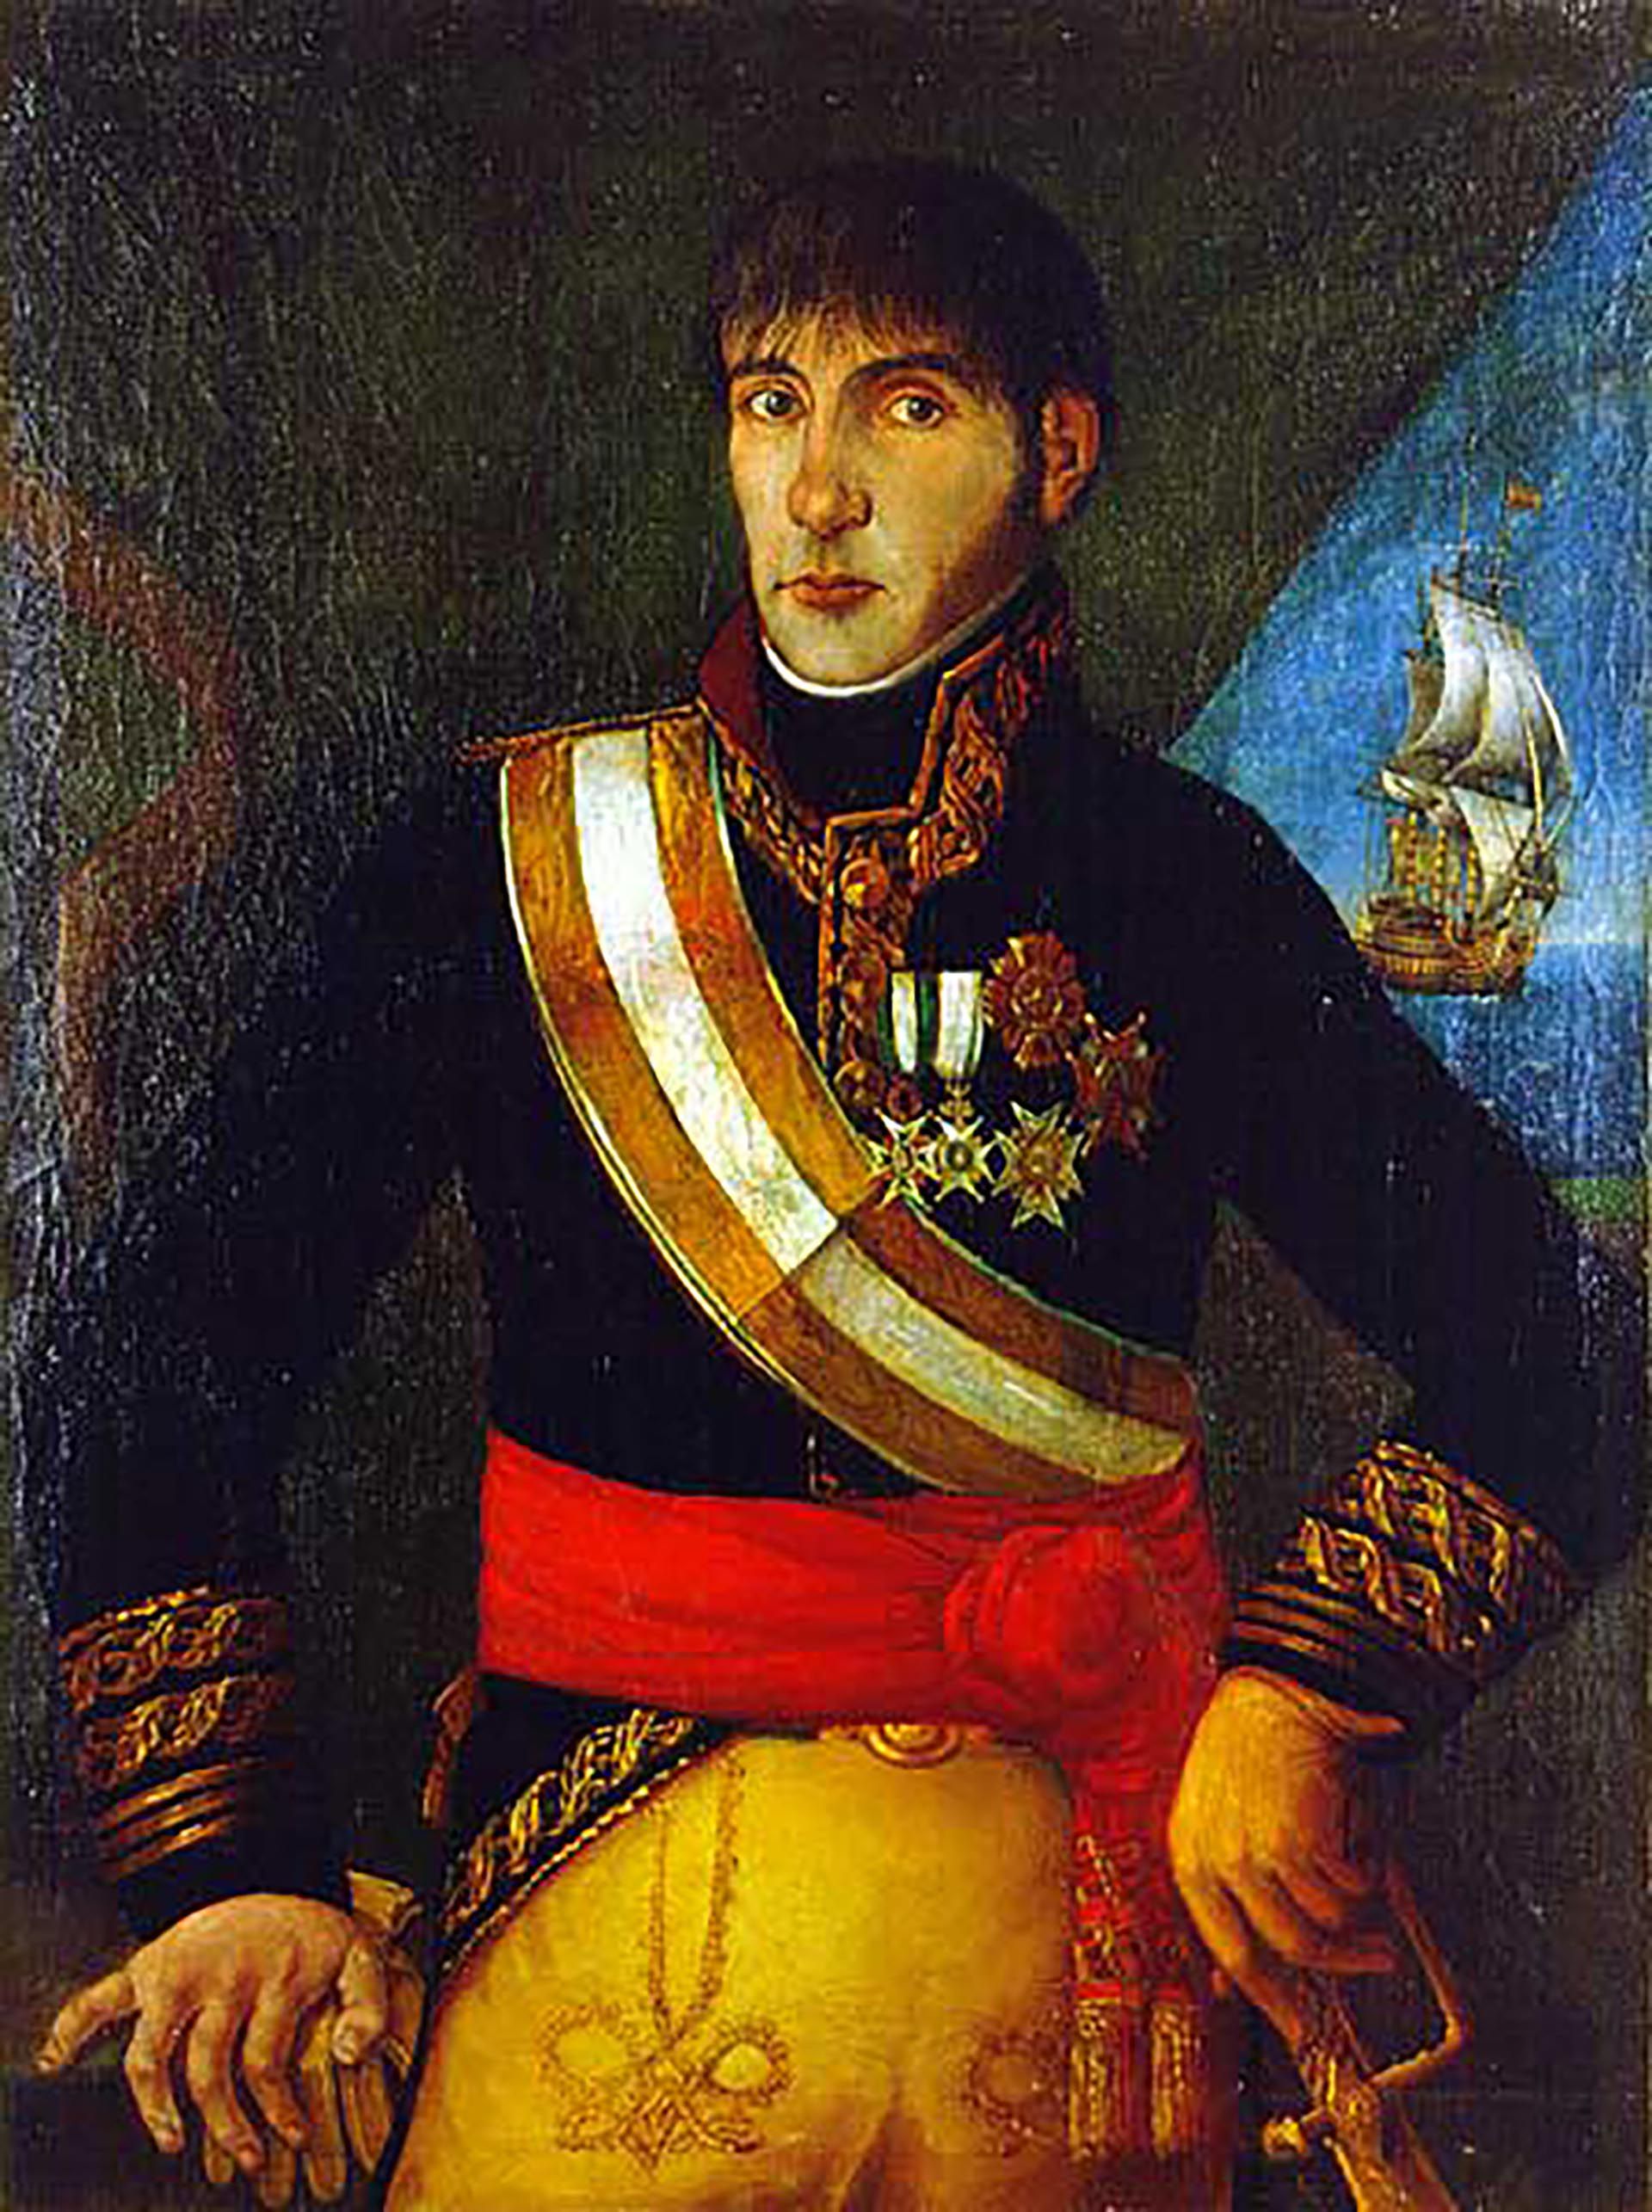 El 20 de mayo de 1810, en su residencia en el Fuerte, Cisneros recibió a los jefes militares con extrema amabilidad